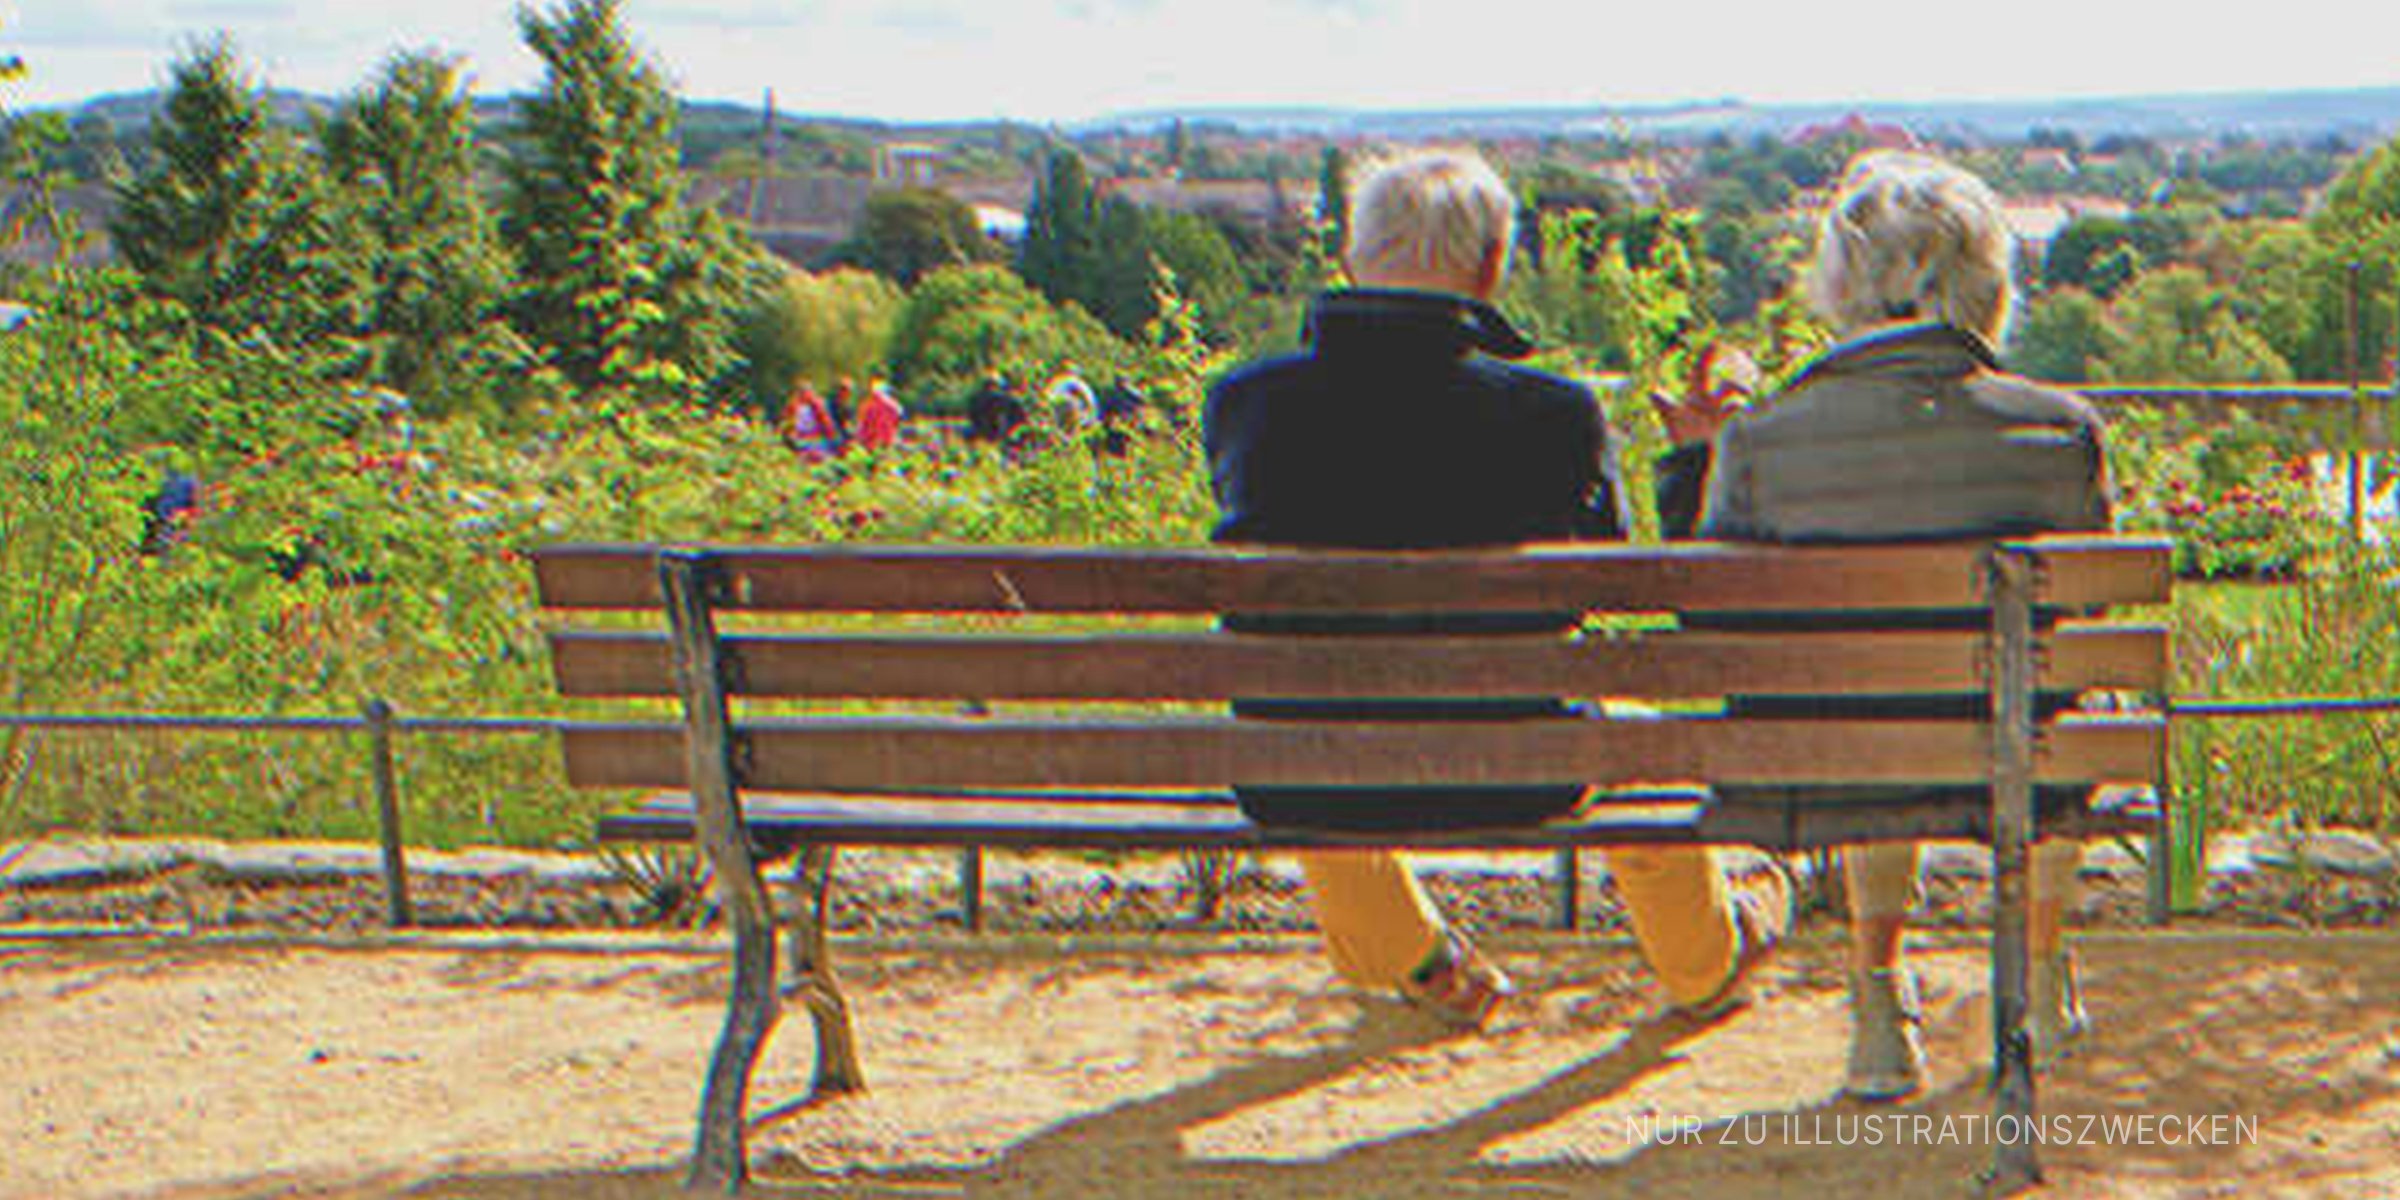 Ein älteres Ehepaar auf einer Parkbank | Quelle: Shutterstock